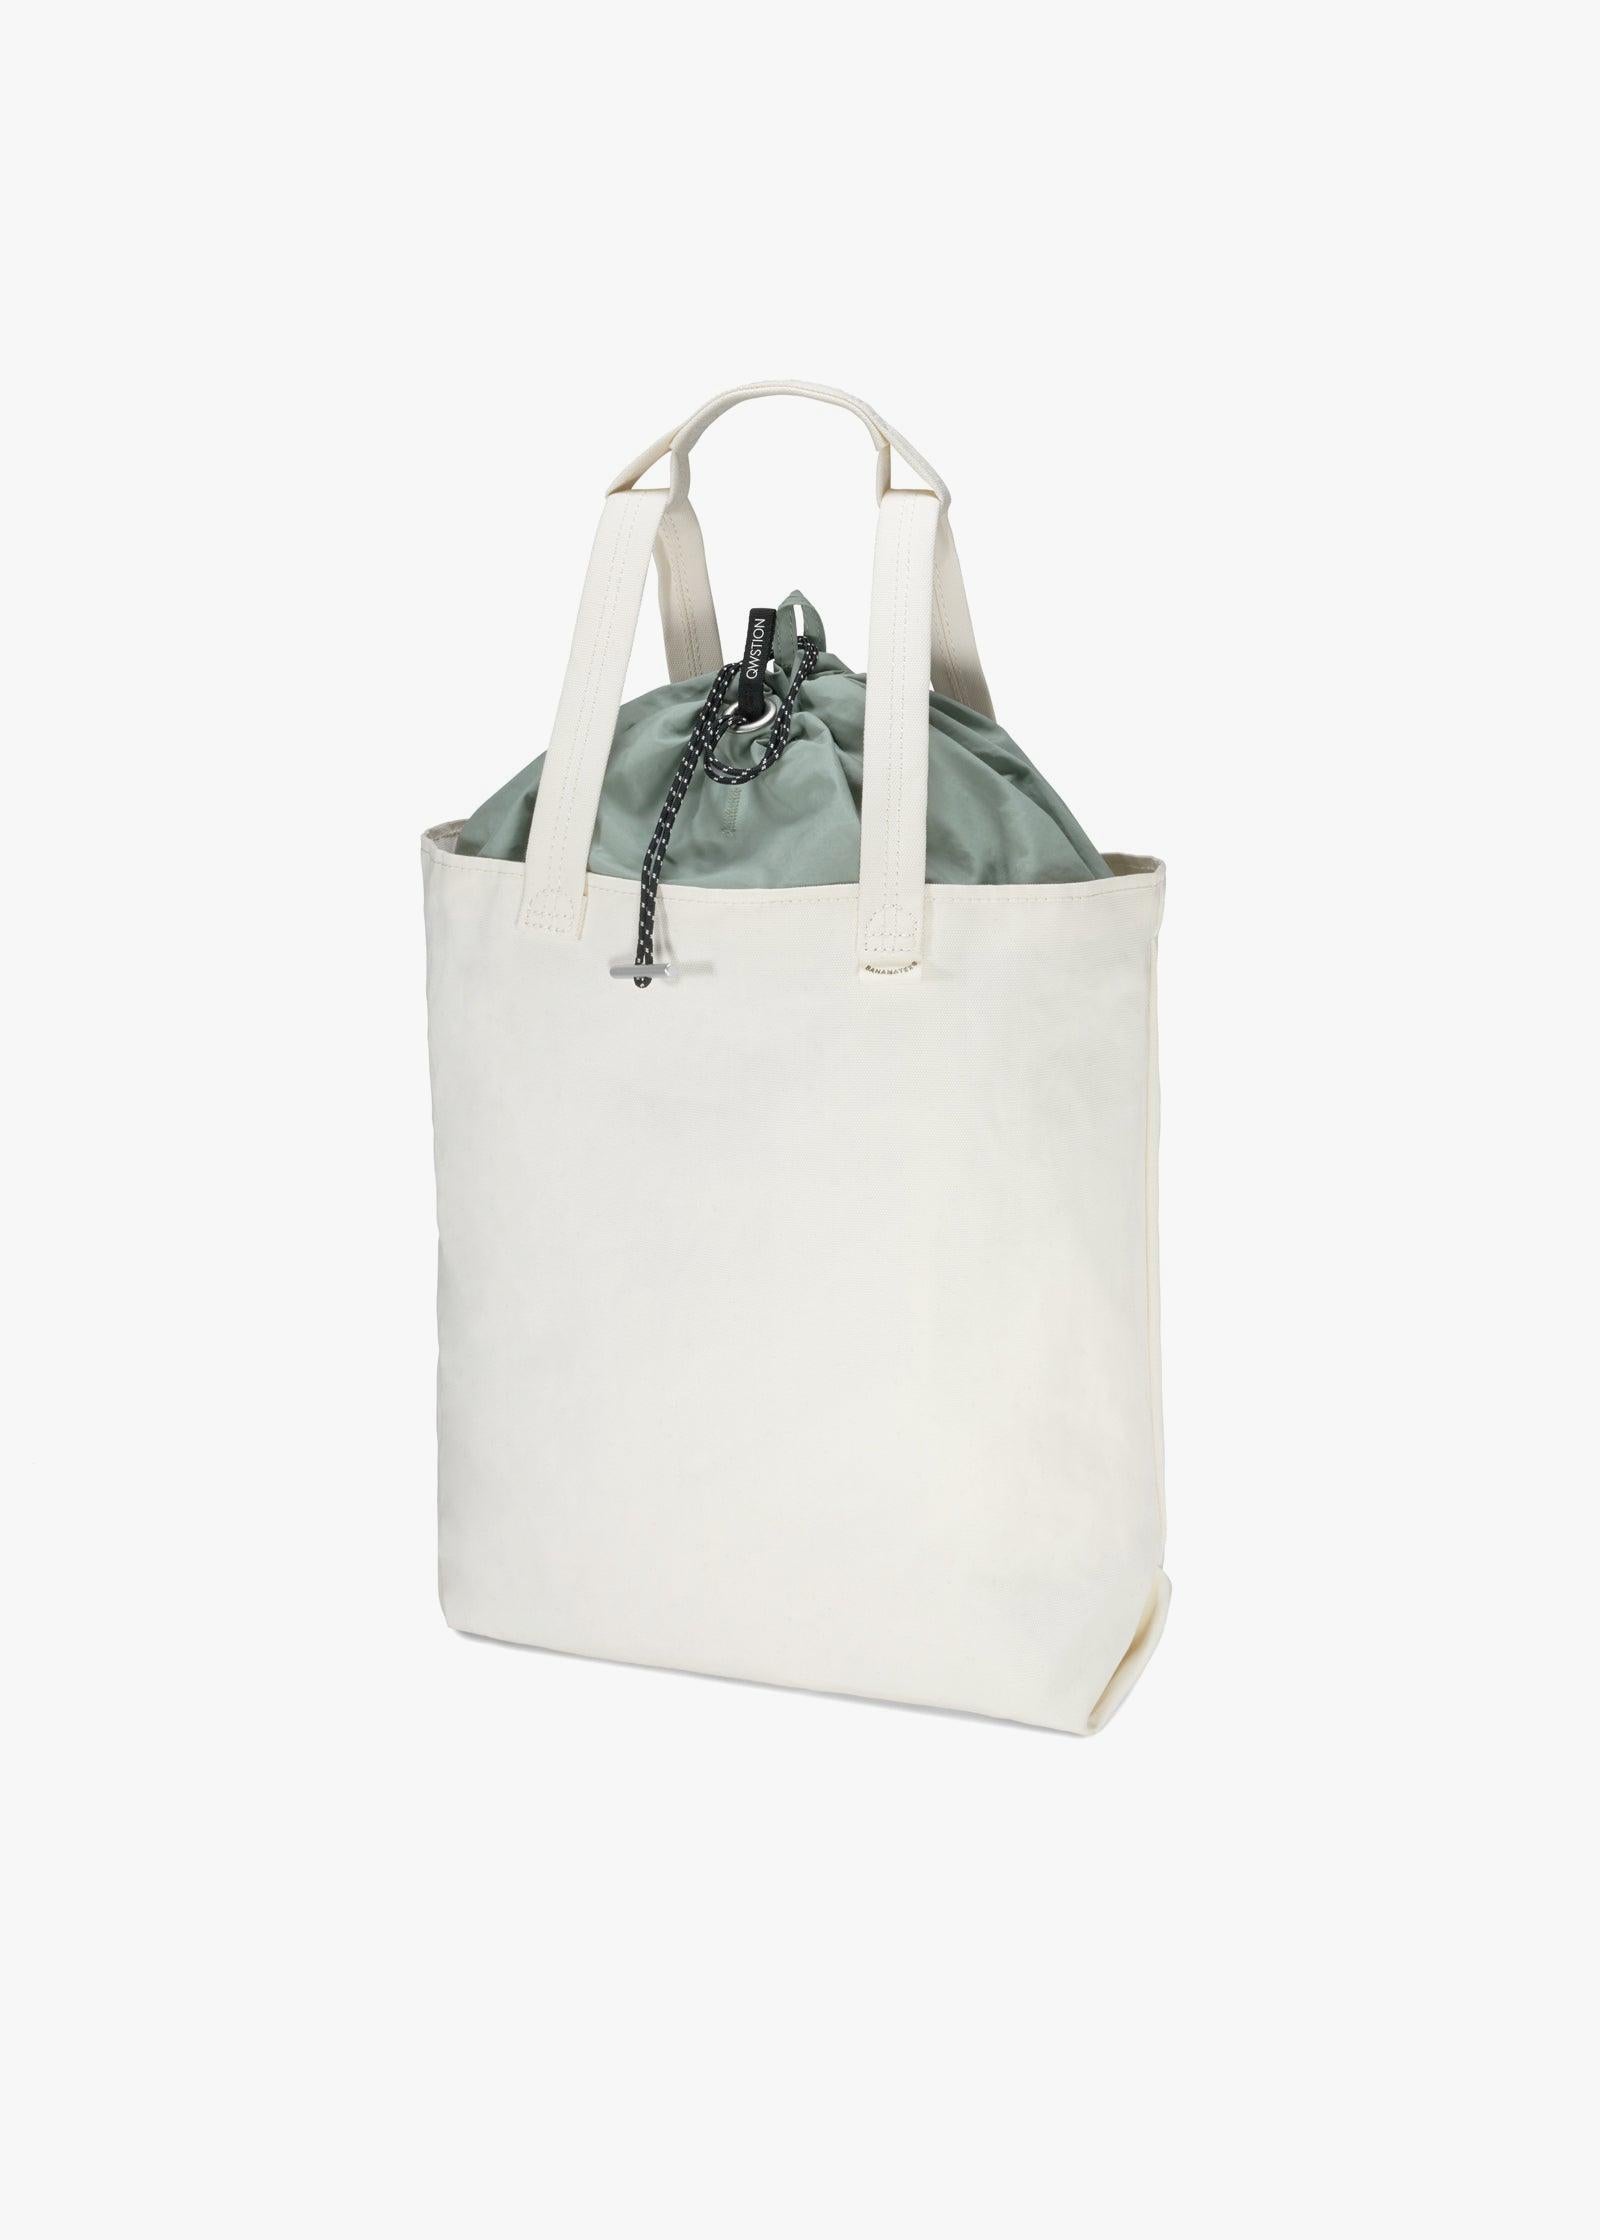 Bananatex Tote Bag Medium – Natural White / Heron